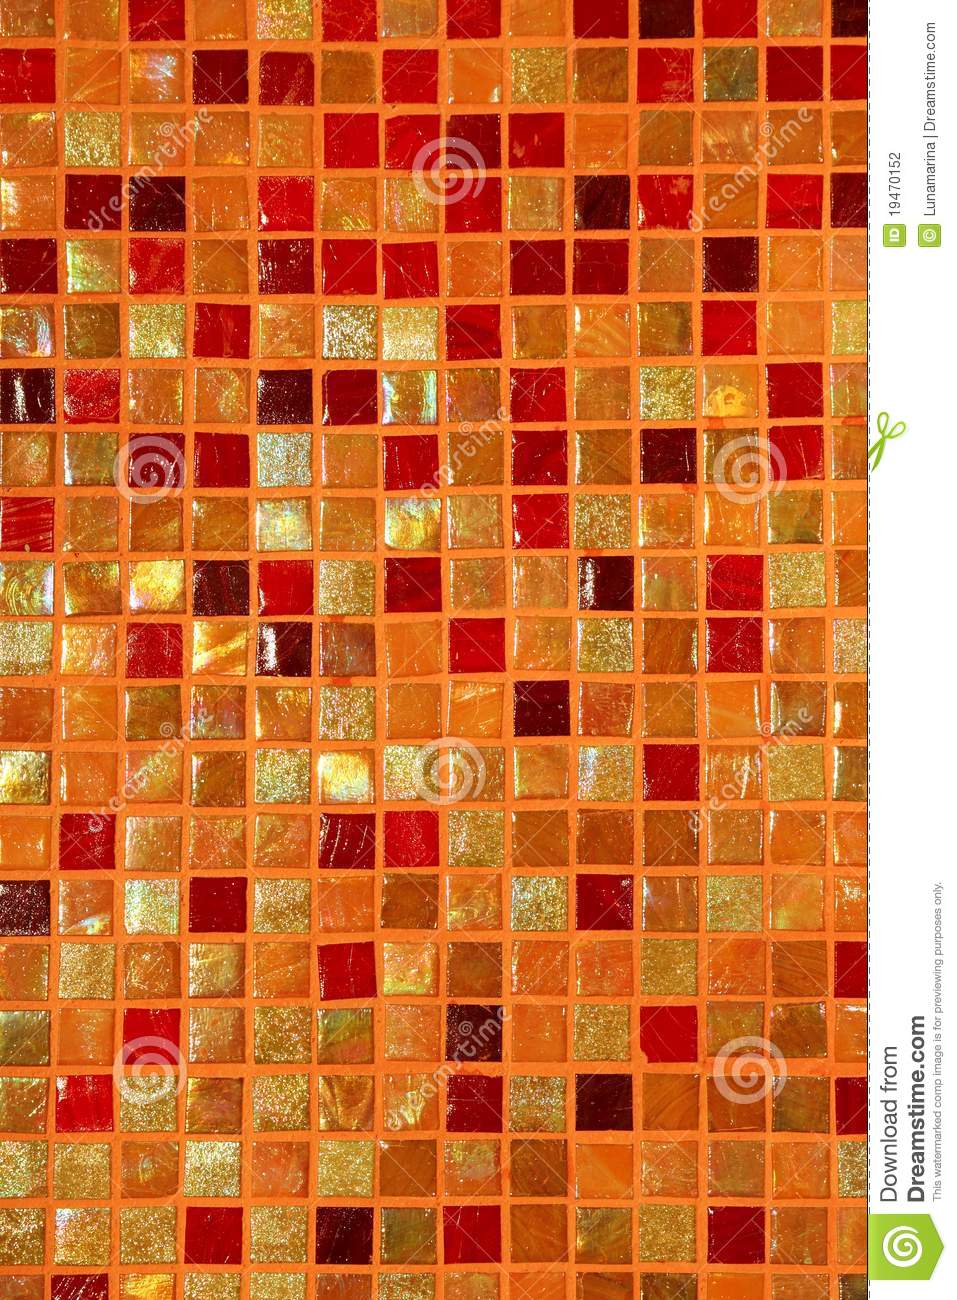 плитки-мозаики-керамического-цветастого-состава-стеклянные-19470152